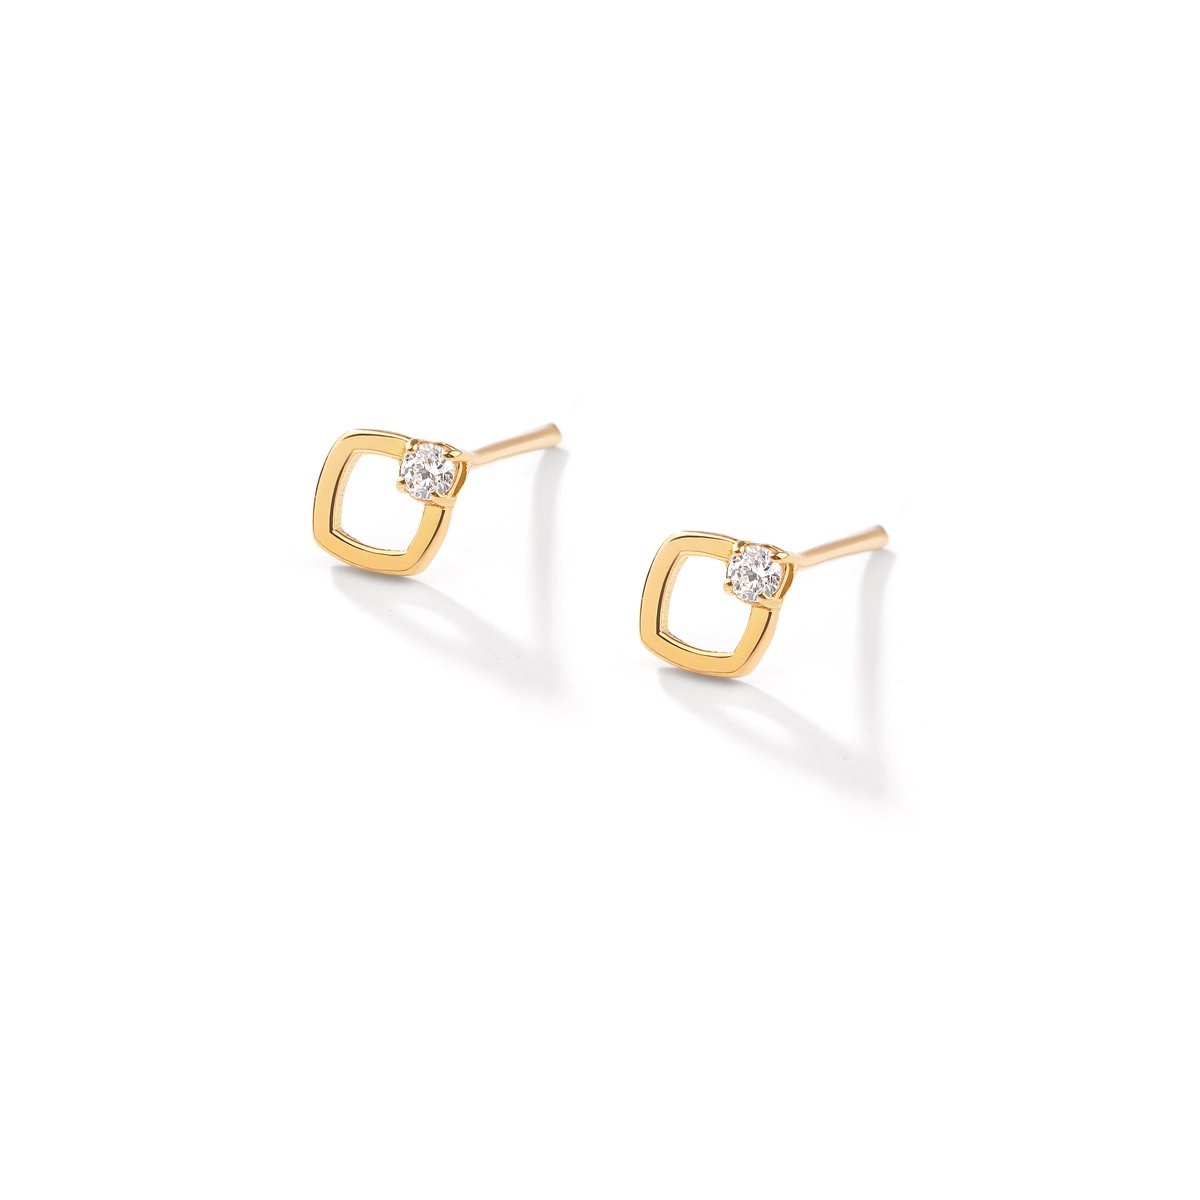 Eliora gold earrings g